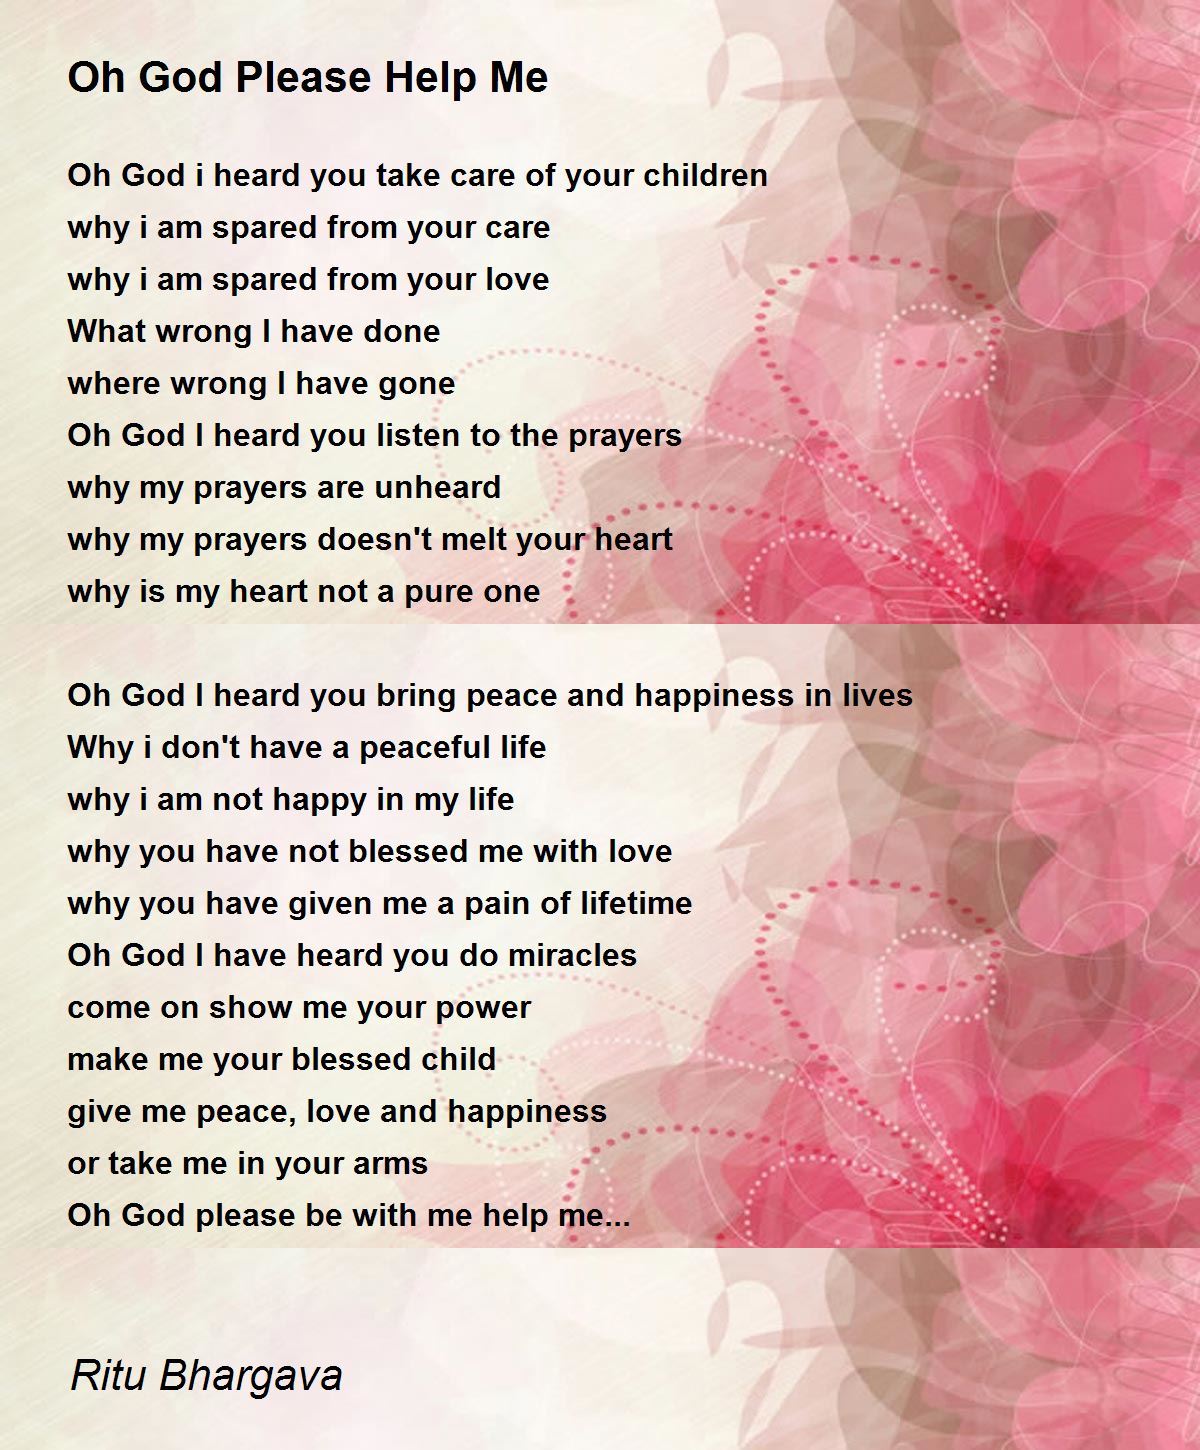 Oh God Please Help Me - Oh God Please Help Me Poem by Ritu Bhargava